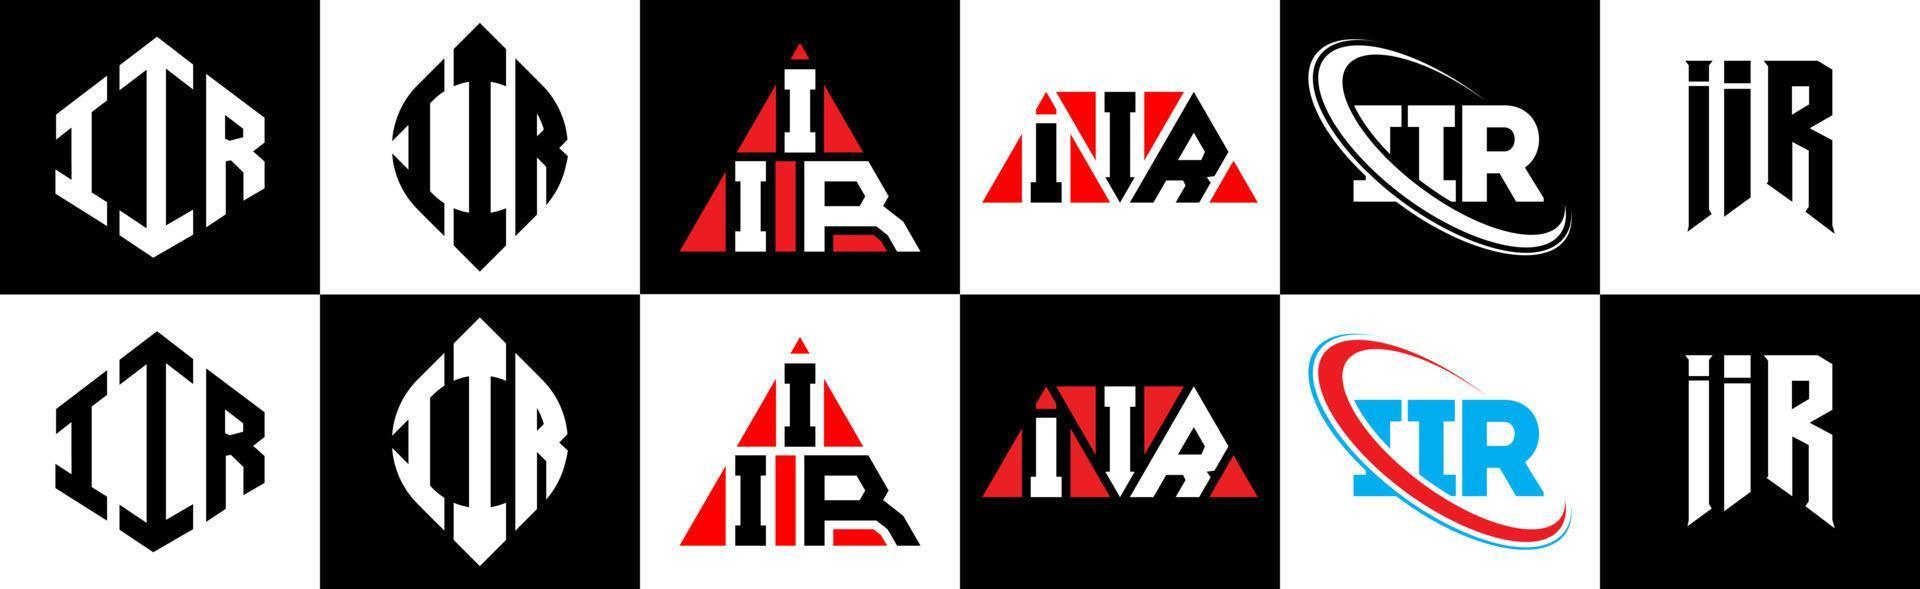 iir-Buchstaben-Logo-Design in sechs Stilen. iir polygon, kreis, dreieck, sechseck, flacher und einfacher stil mit schwarz-weißem buchstabenlogo in einer zeichenfläche. Iir minimalistisches und klassisches Logo vektor